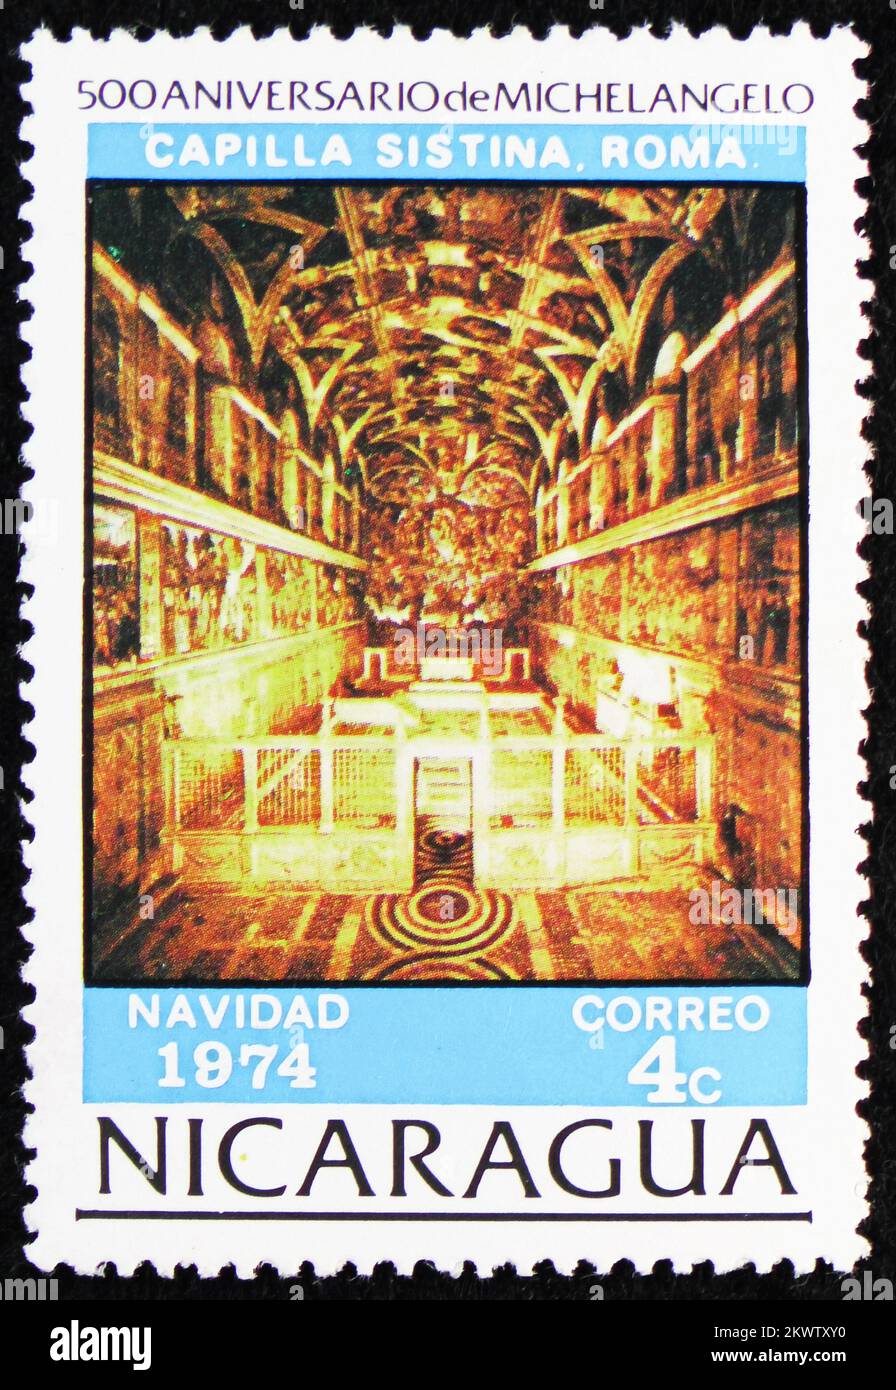 MOSCOU, RUSSIE - le 29 OCTOBRE 2022 : timbre-poste imprimé au Nicaragua montre la chapelle Sixtine, Michel-Ange, série de Noël 1974, vers 1974 Banque D'Images